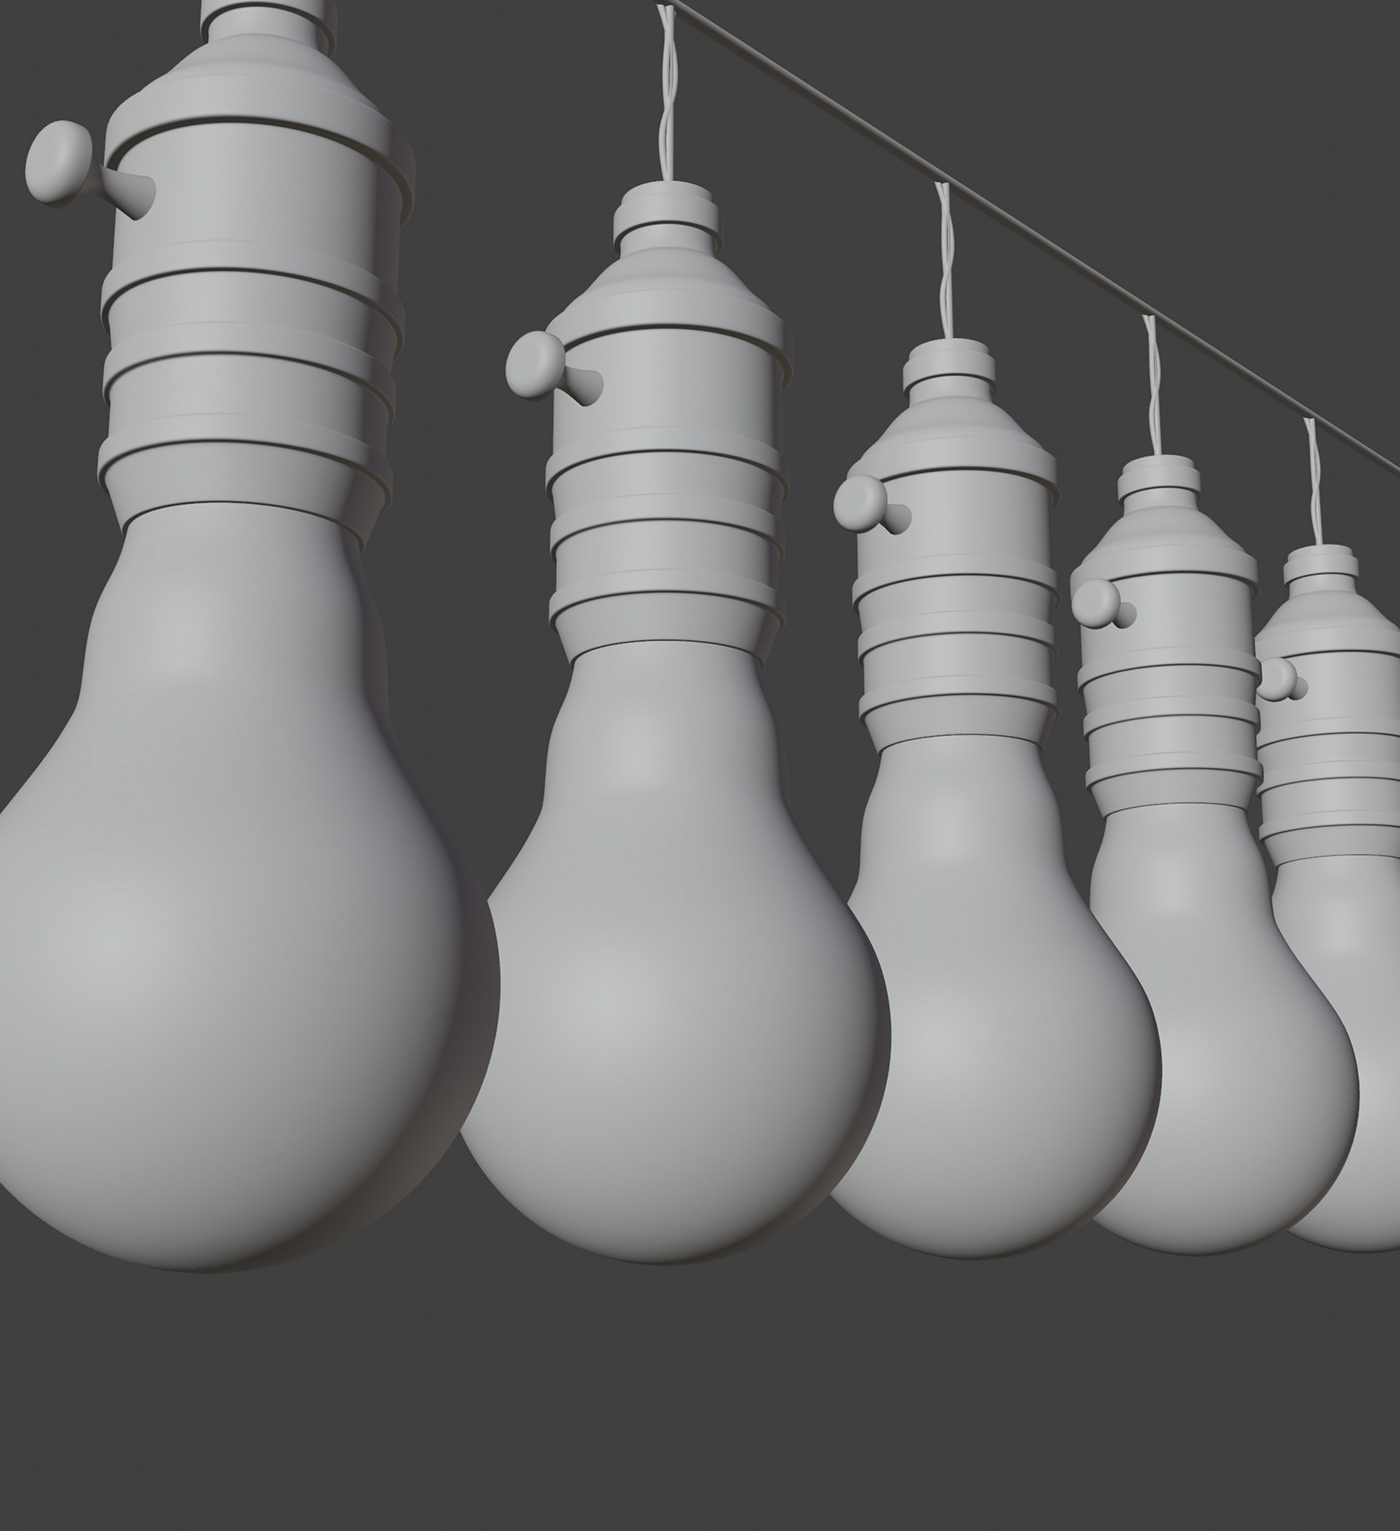 light light bulb realistic model lighting compositing blender 3D Render